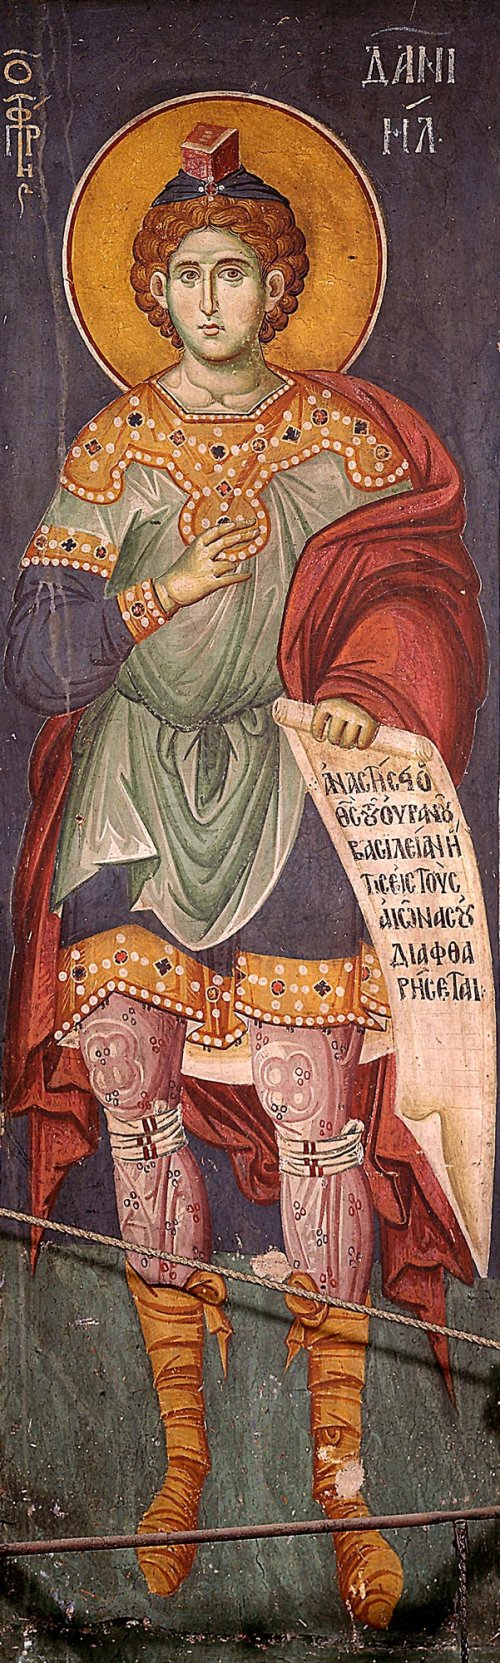 Sfântul Proroc Daniel şi Sfinţii trei tineri Anania, Azaria şi Misail